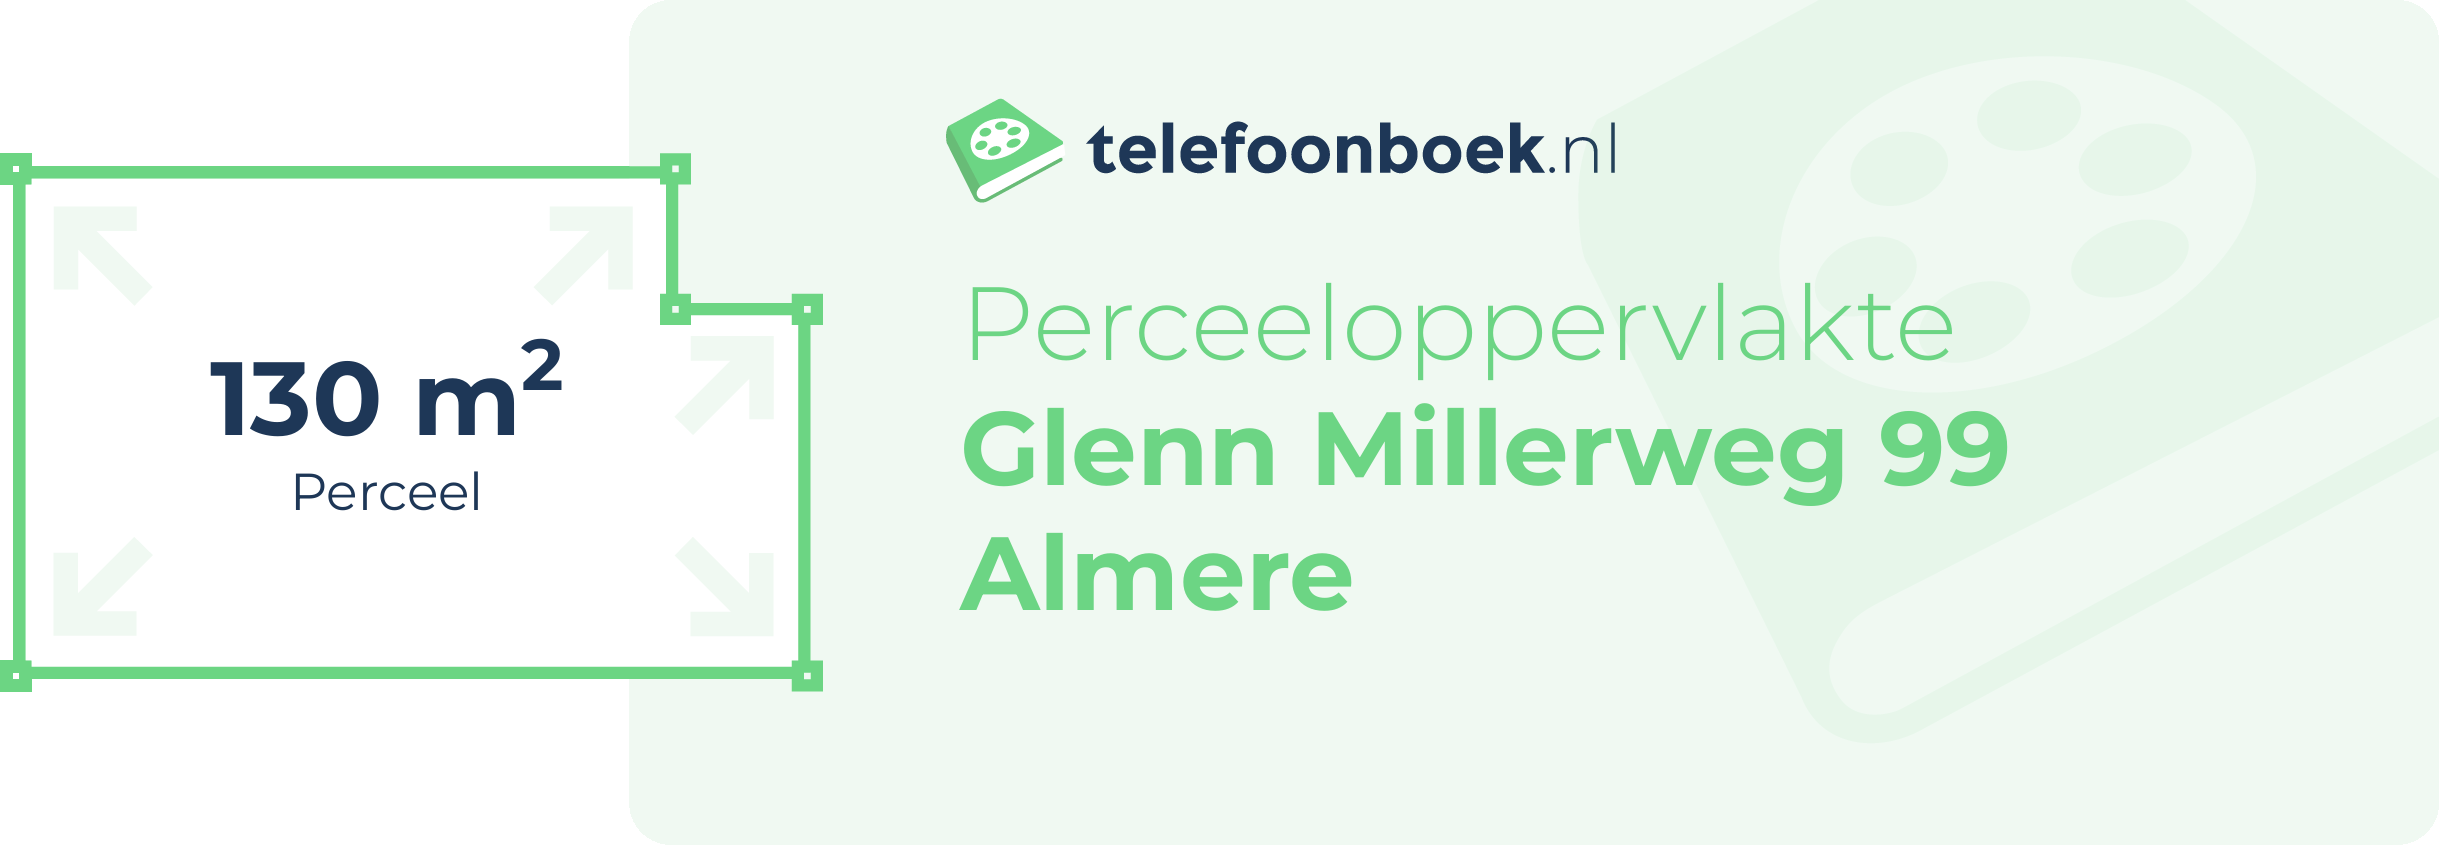 Perceeloppervlakte Glenn Millerweg 99 Almere